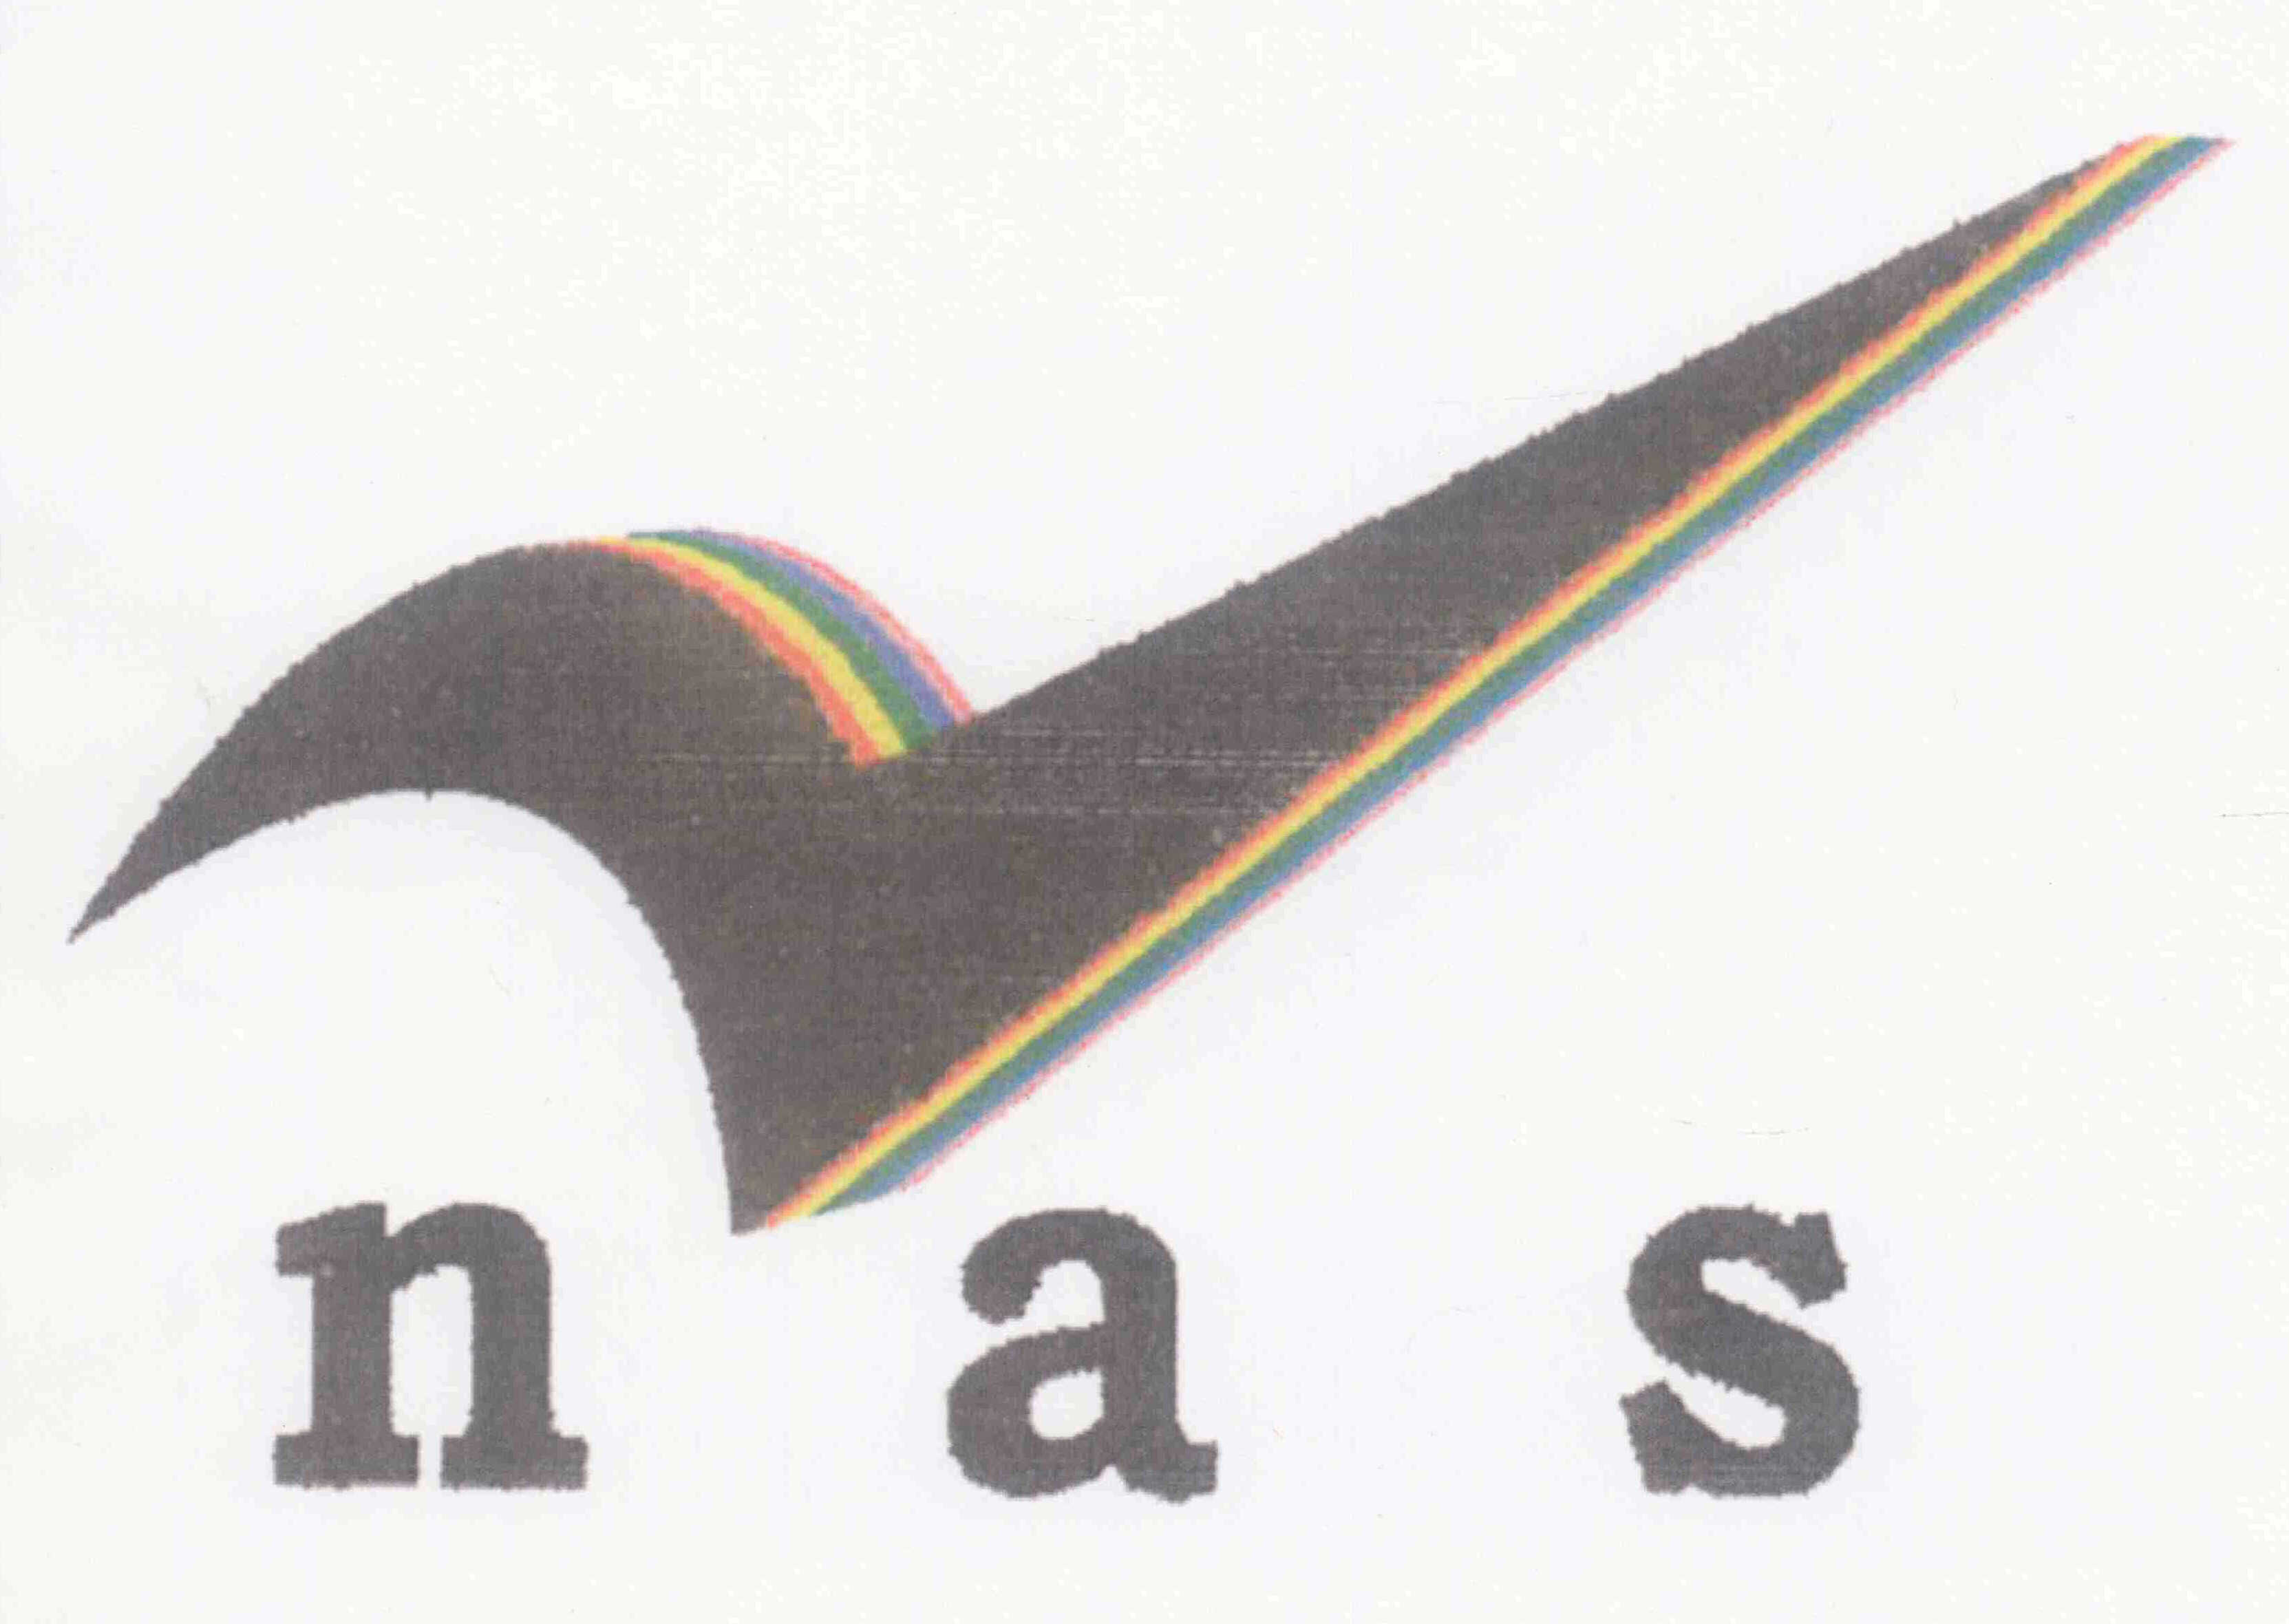 Trademark Logo NAS